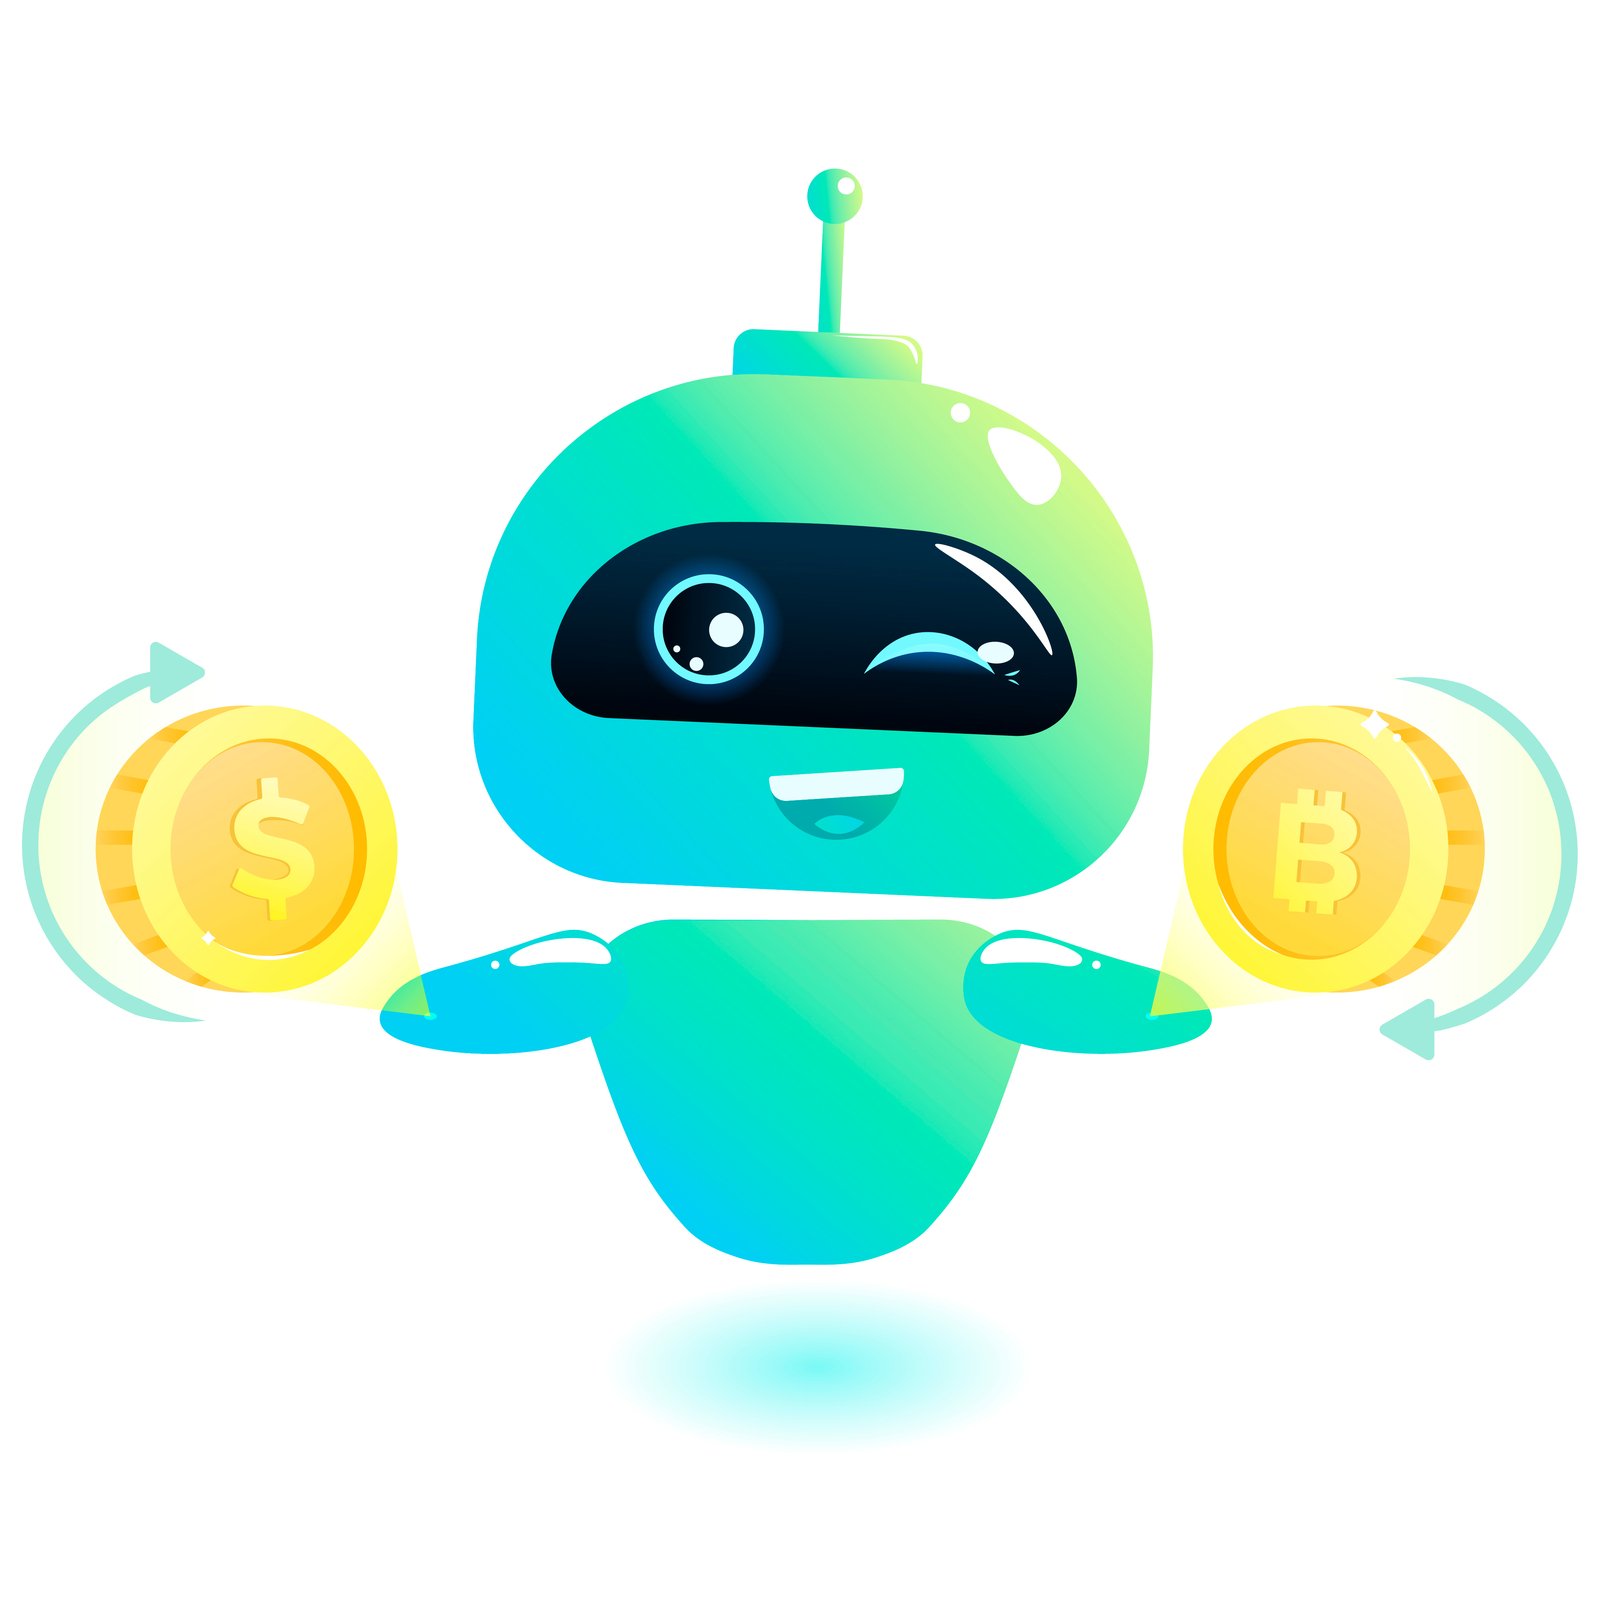 Metatrader forex robot opțiunea binară uk youtube câți bani câștigă dp criptomonedele valutare